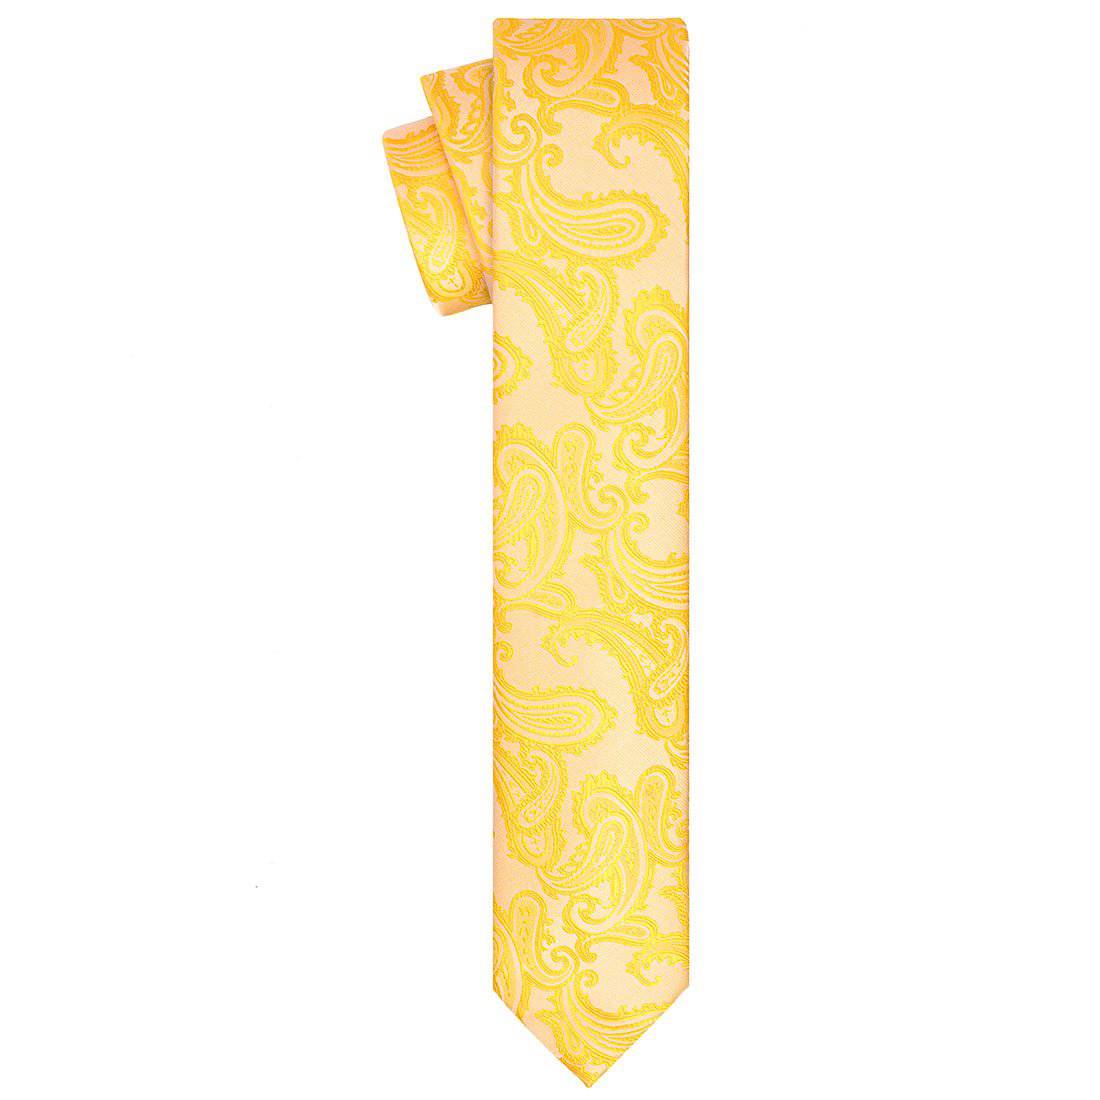 Gold Paisley Tie - Tie, bowtie, pocket square  | Kissties